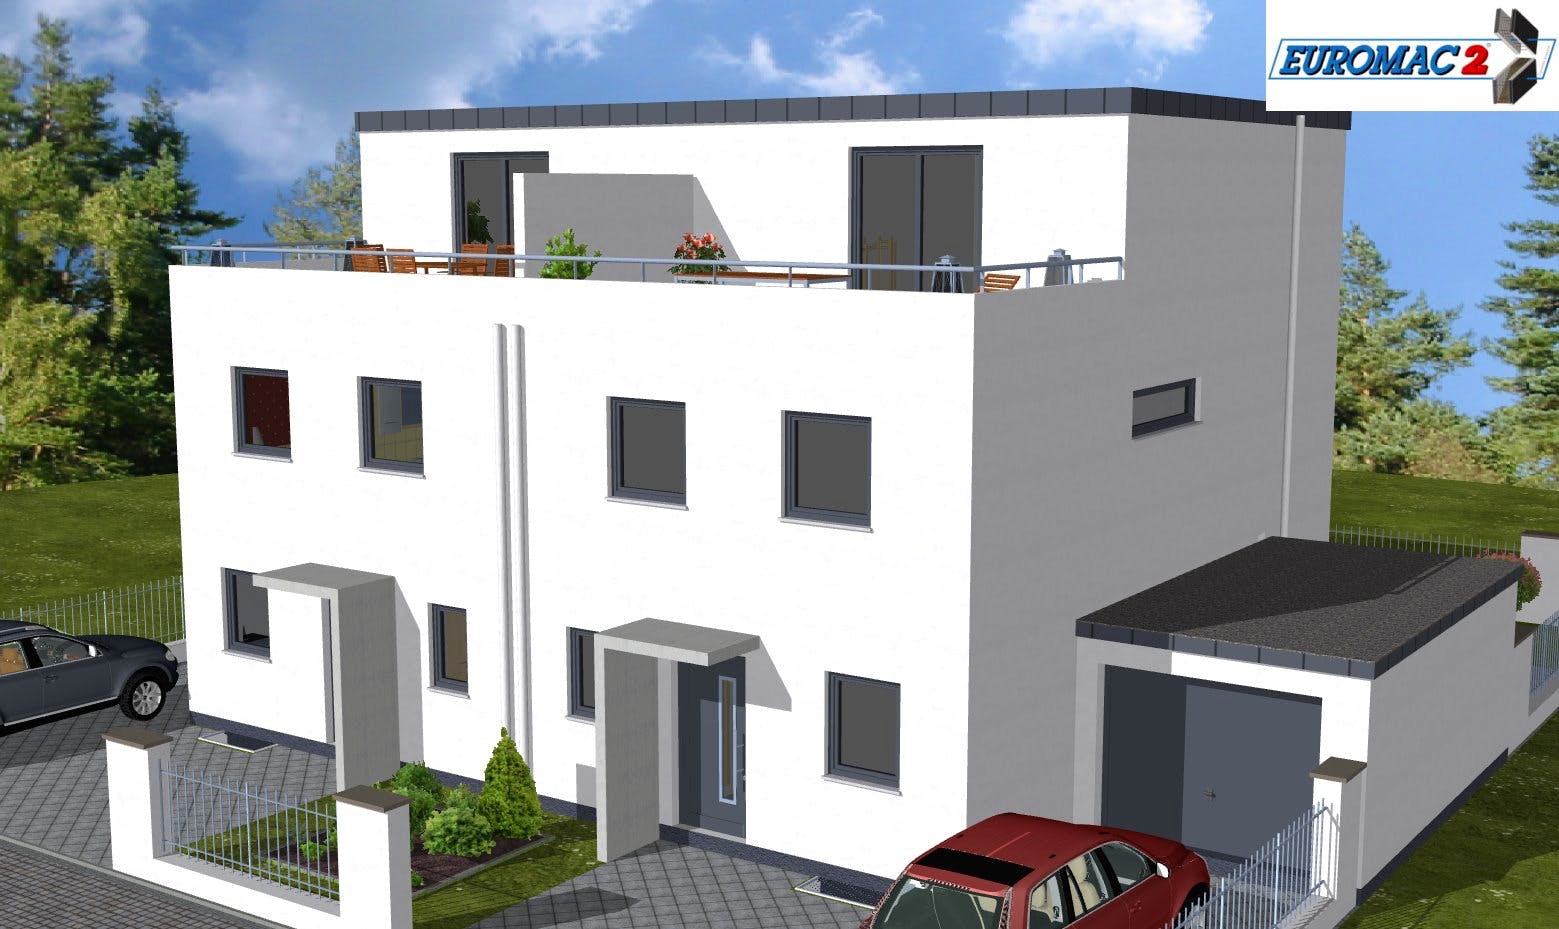 Massivhaus Trend 160 FD von EUROMAC 2 S.A.S. Bausatzhaus ab 44819€, Cubushaus Außenansicht 2